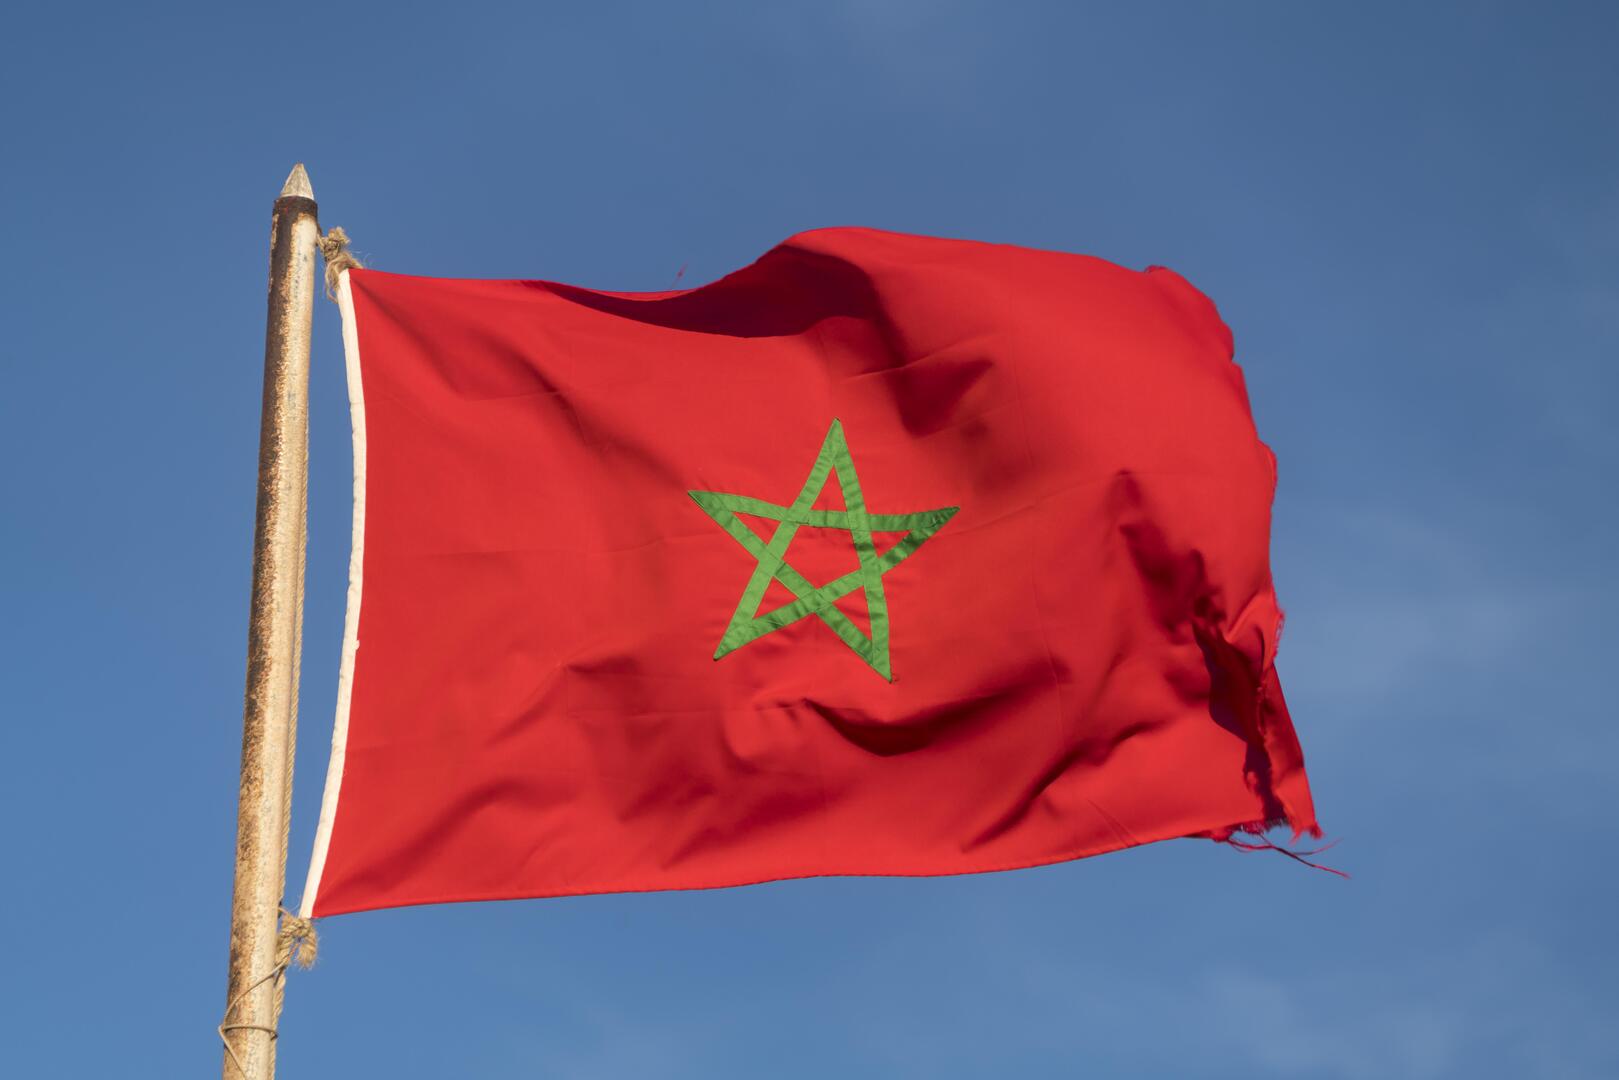 شركة بريطانية توقع اتفاقا مع المغرب لنقل 